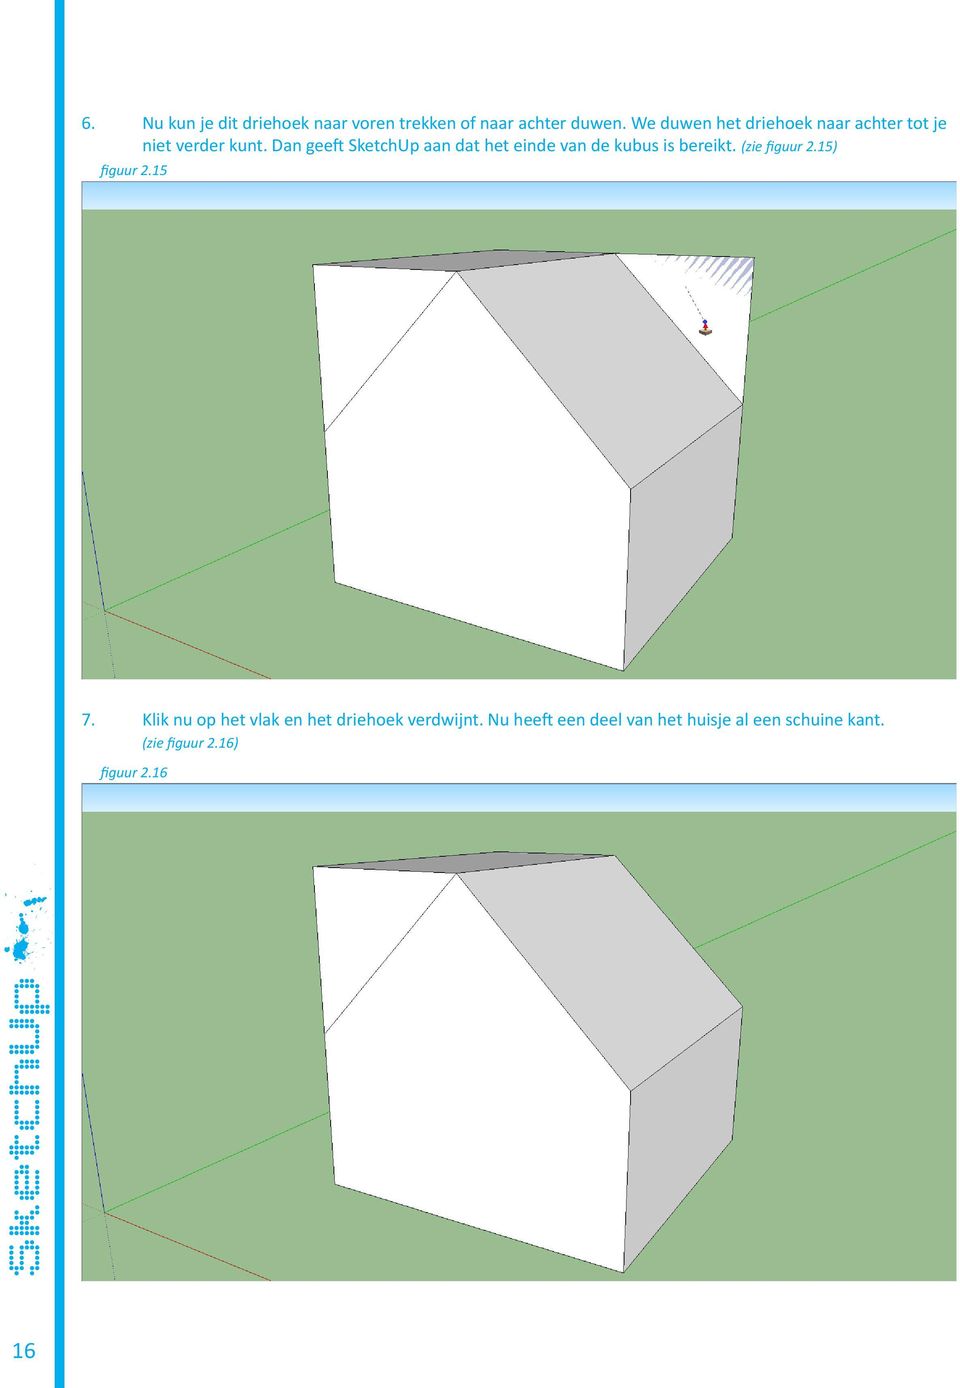 Dan geeft SketchUp aan dat het einde van de kubus is bereikt. (zie figuur 2.15) figuur 2.